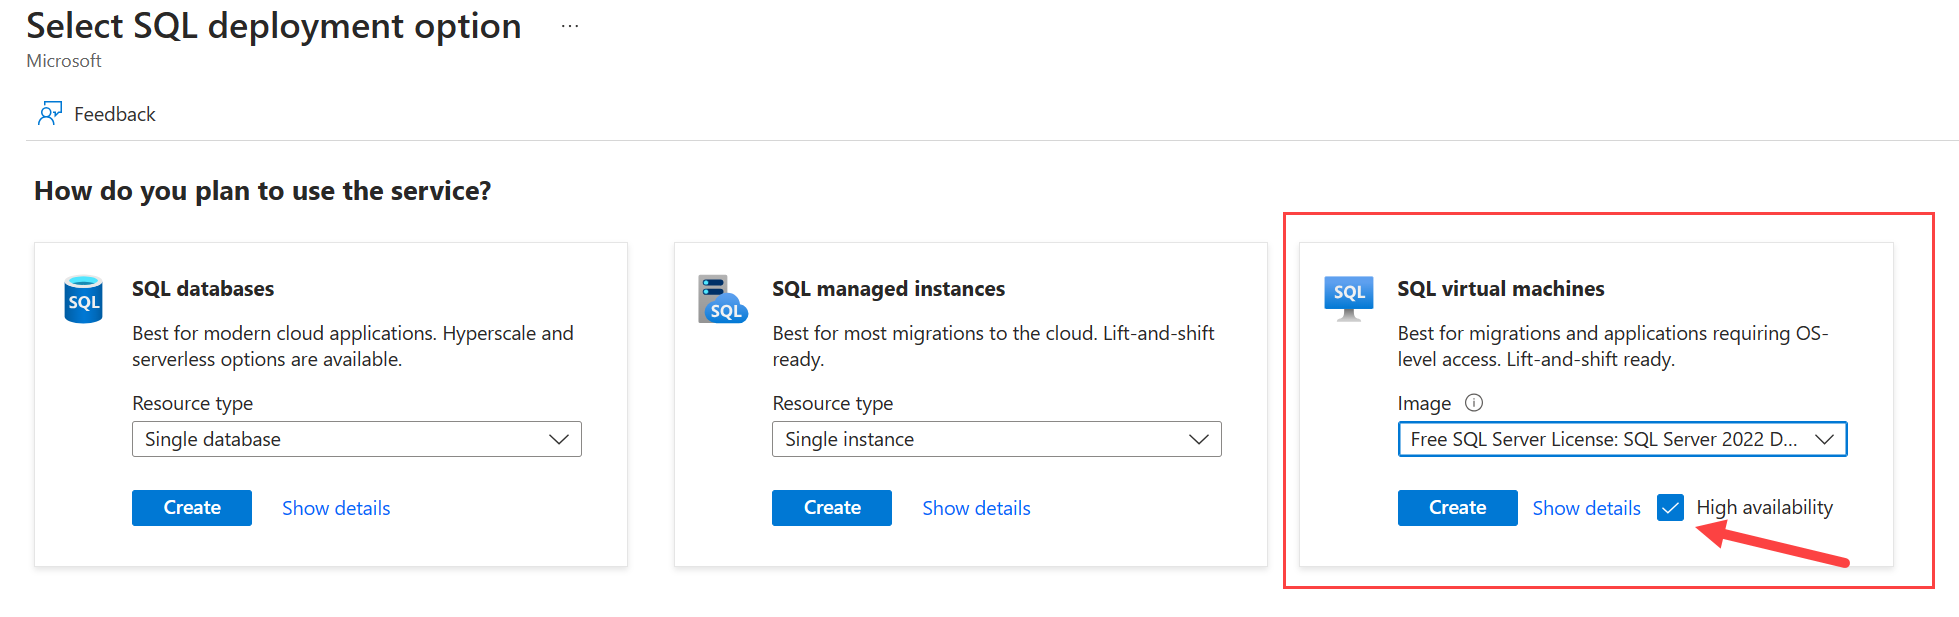 Снимок экрана: портал Azure, на котором показана страница выбора параметра развертывания SQL Server с выбранным уровнем доступности.